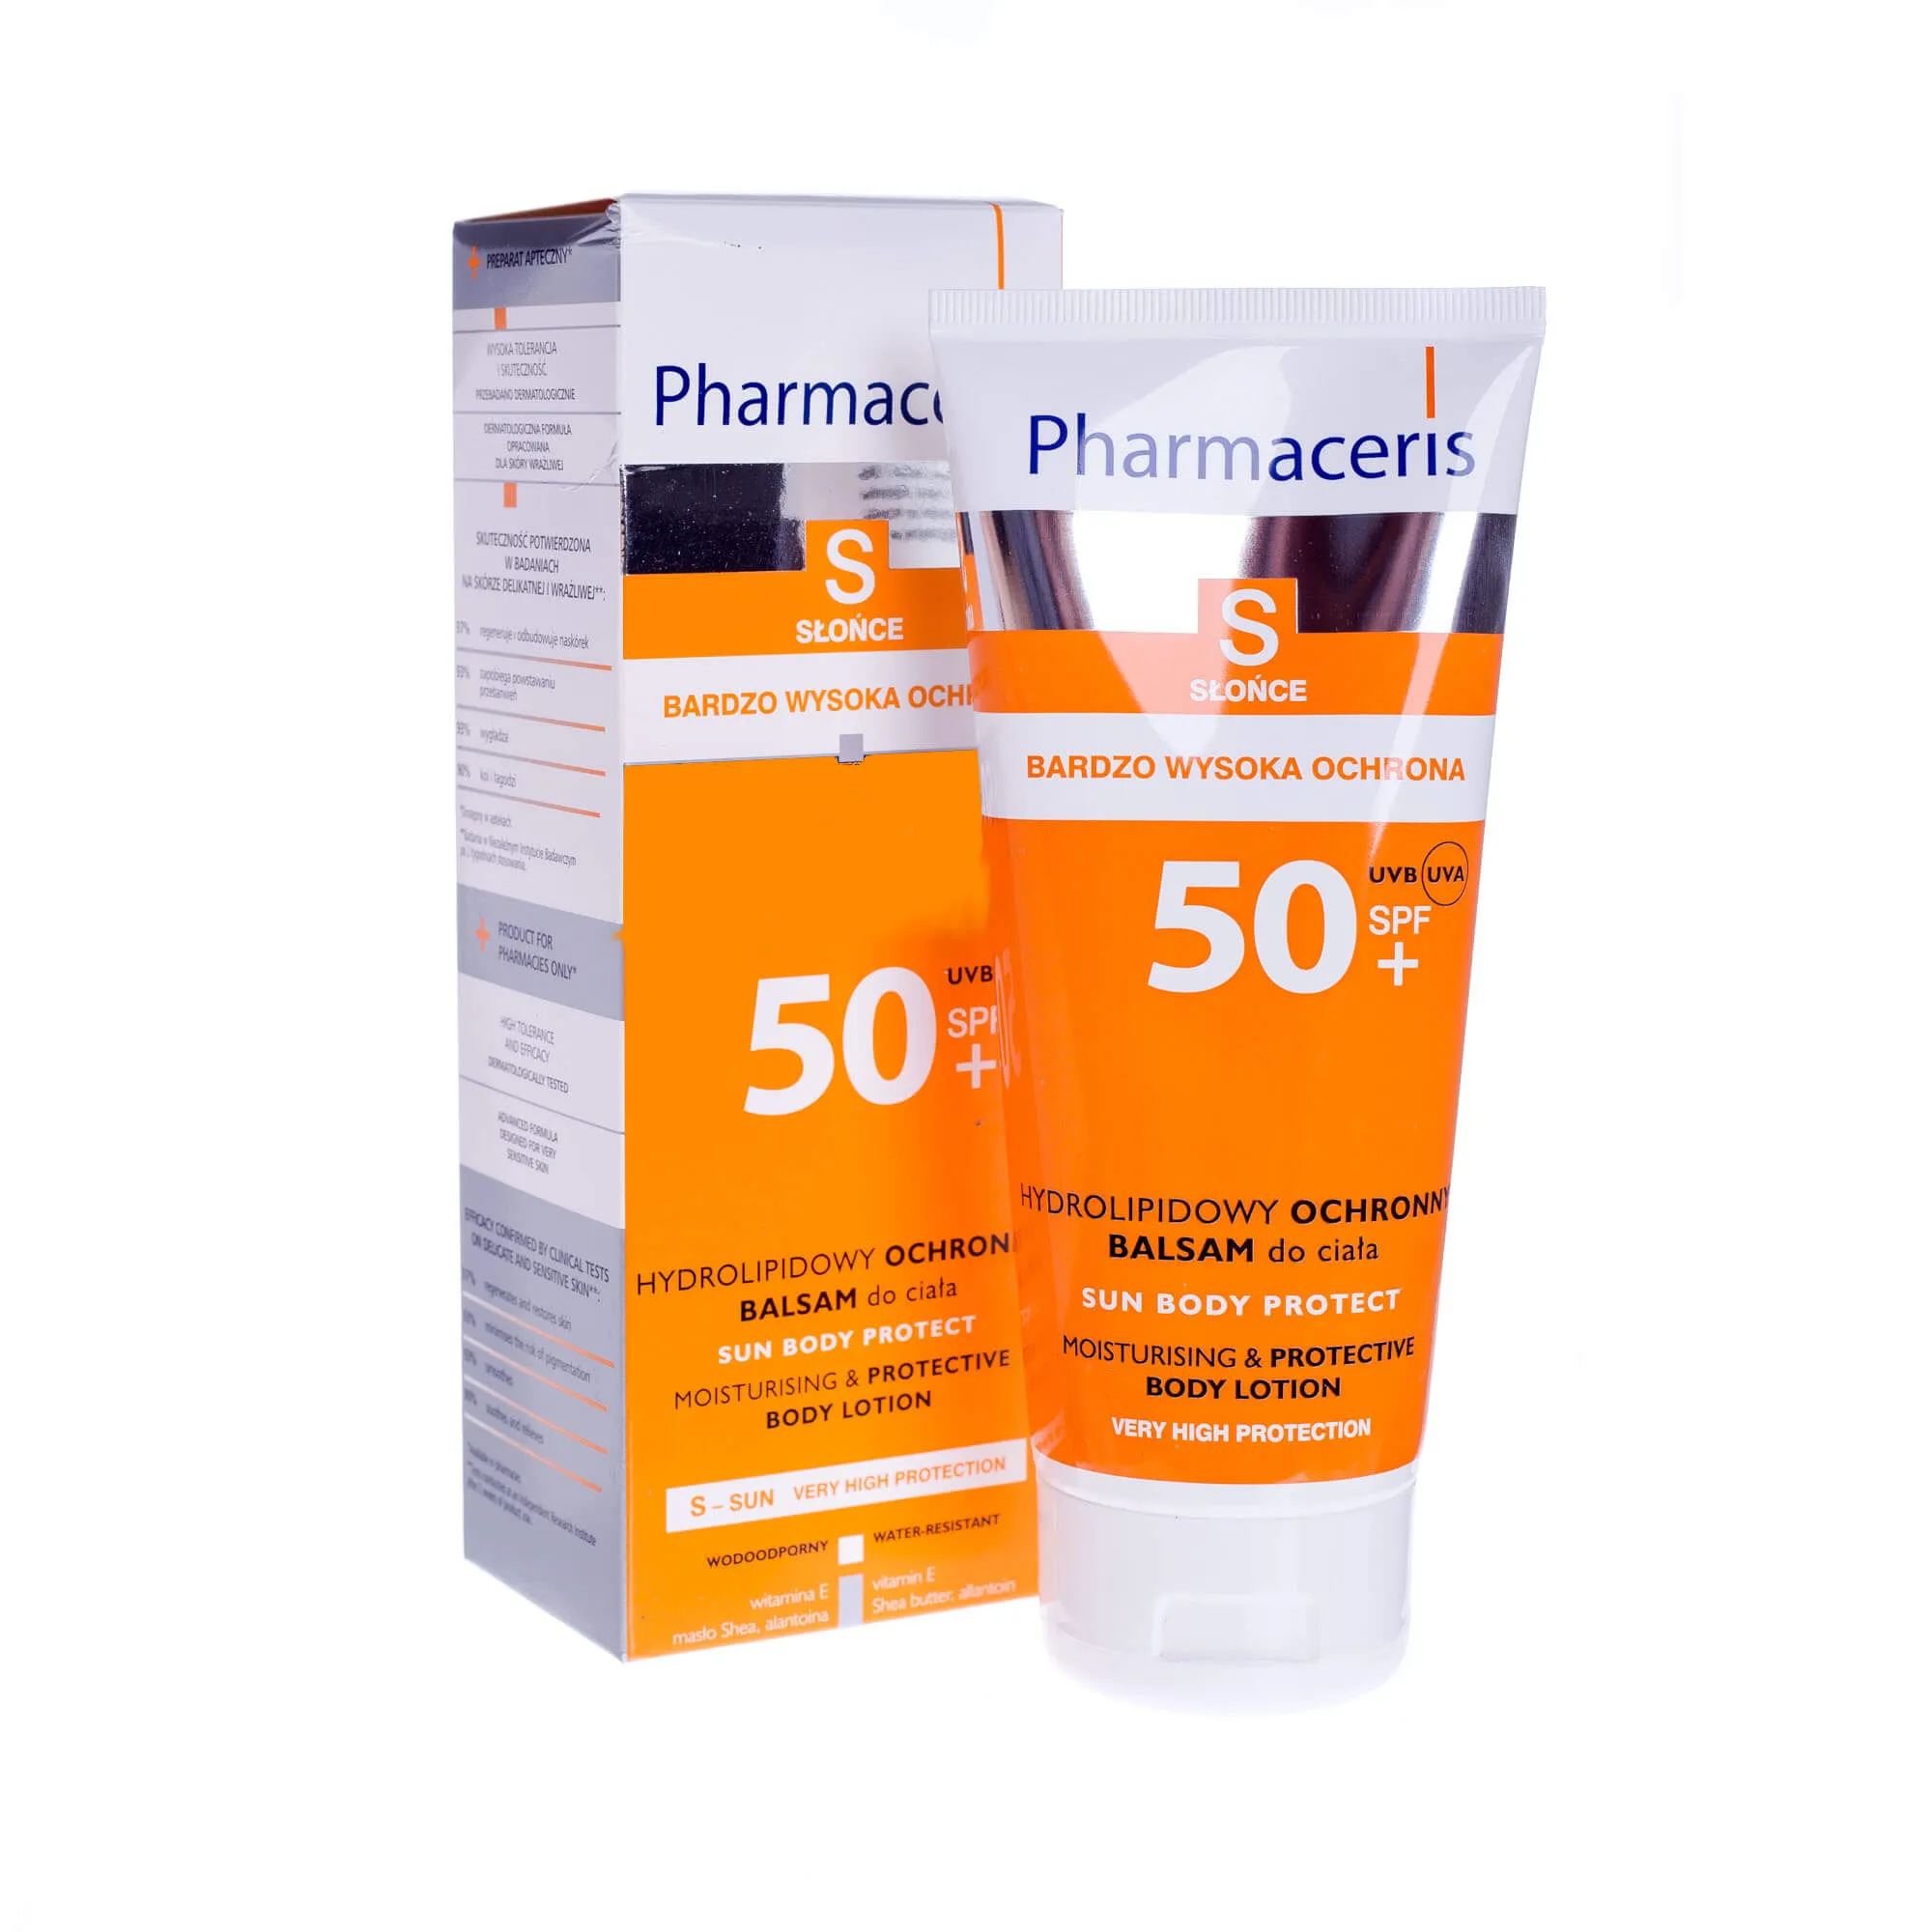 Pharmaceris S Sun Body Protect, hydrolipidowy ochronny balsam do ciała, SPF 50+, 200 ml